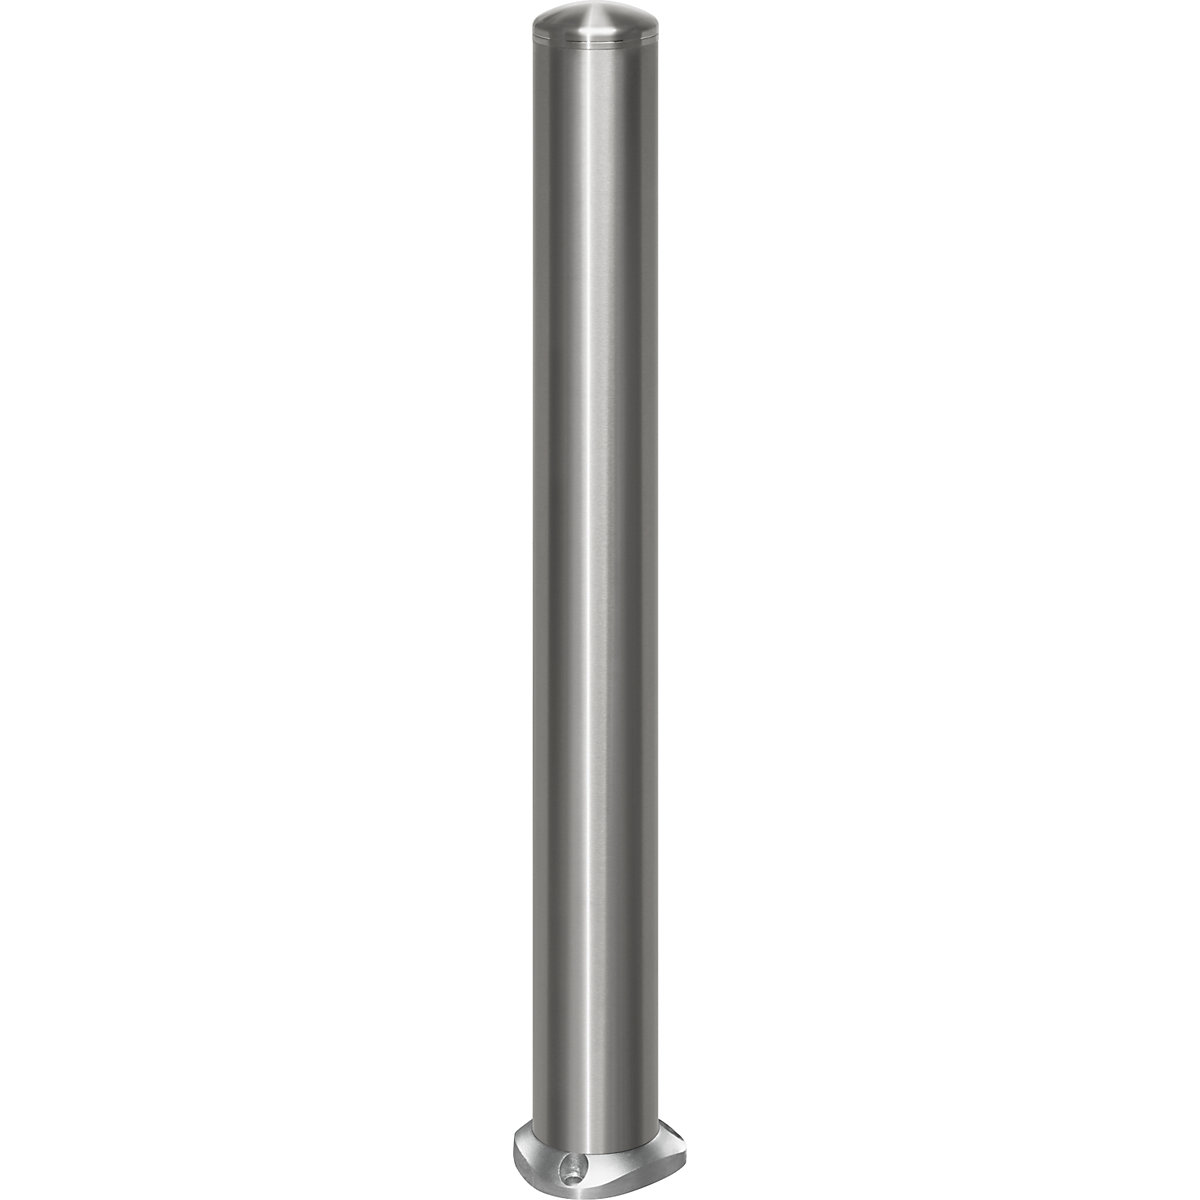 Poste de barreira em aço inoxidável, com tampa, placa de solo para fixar com buchas, Ø 102 mm, endireitamento automático-10